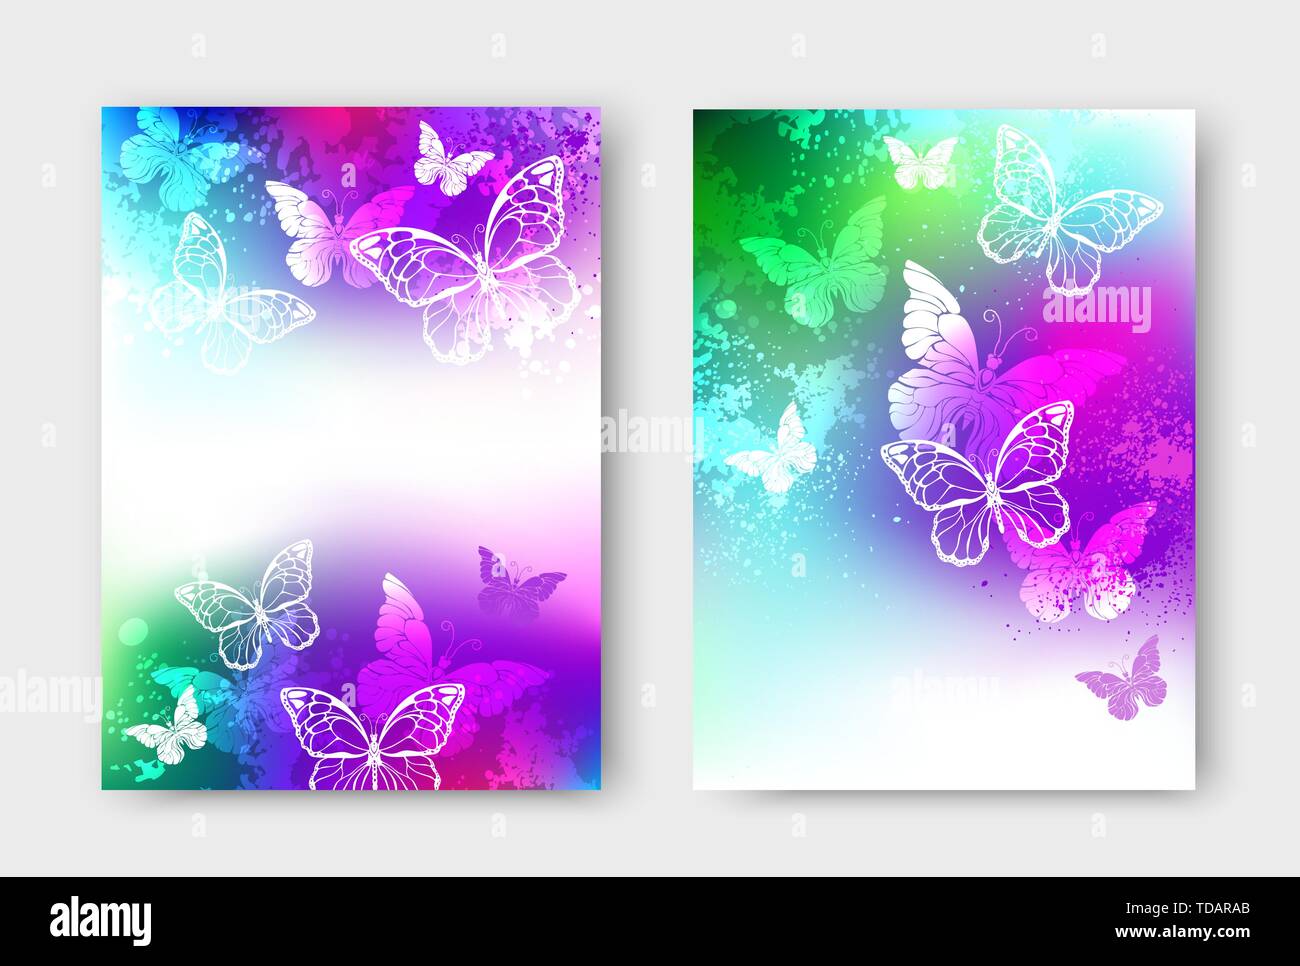 Pour la conception de brochure avec des papillons blancs sur fond irisé, lumineuses, colorées avec de la peinture colorée. Modèle d'illustration vectorielle en format A4. Illustration de Vecteur